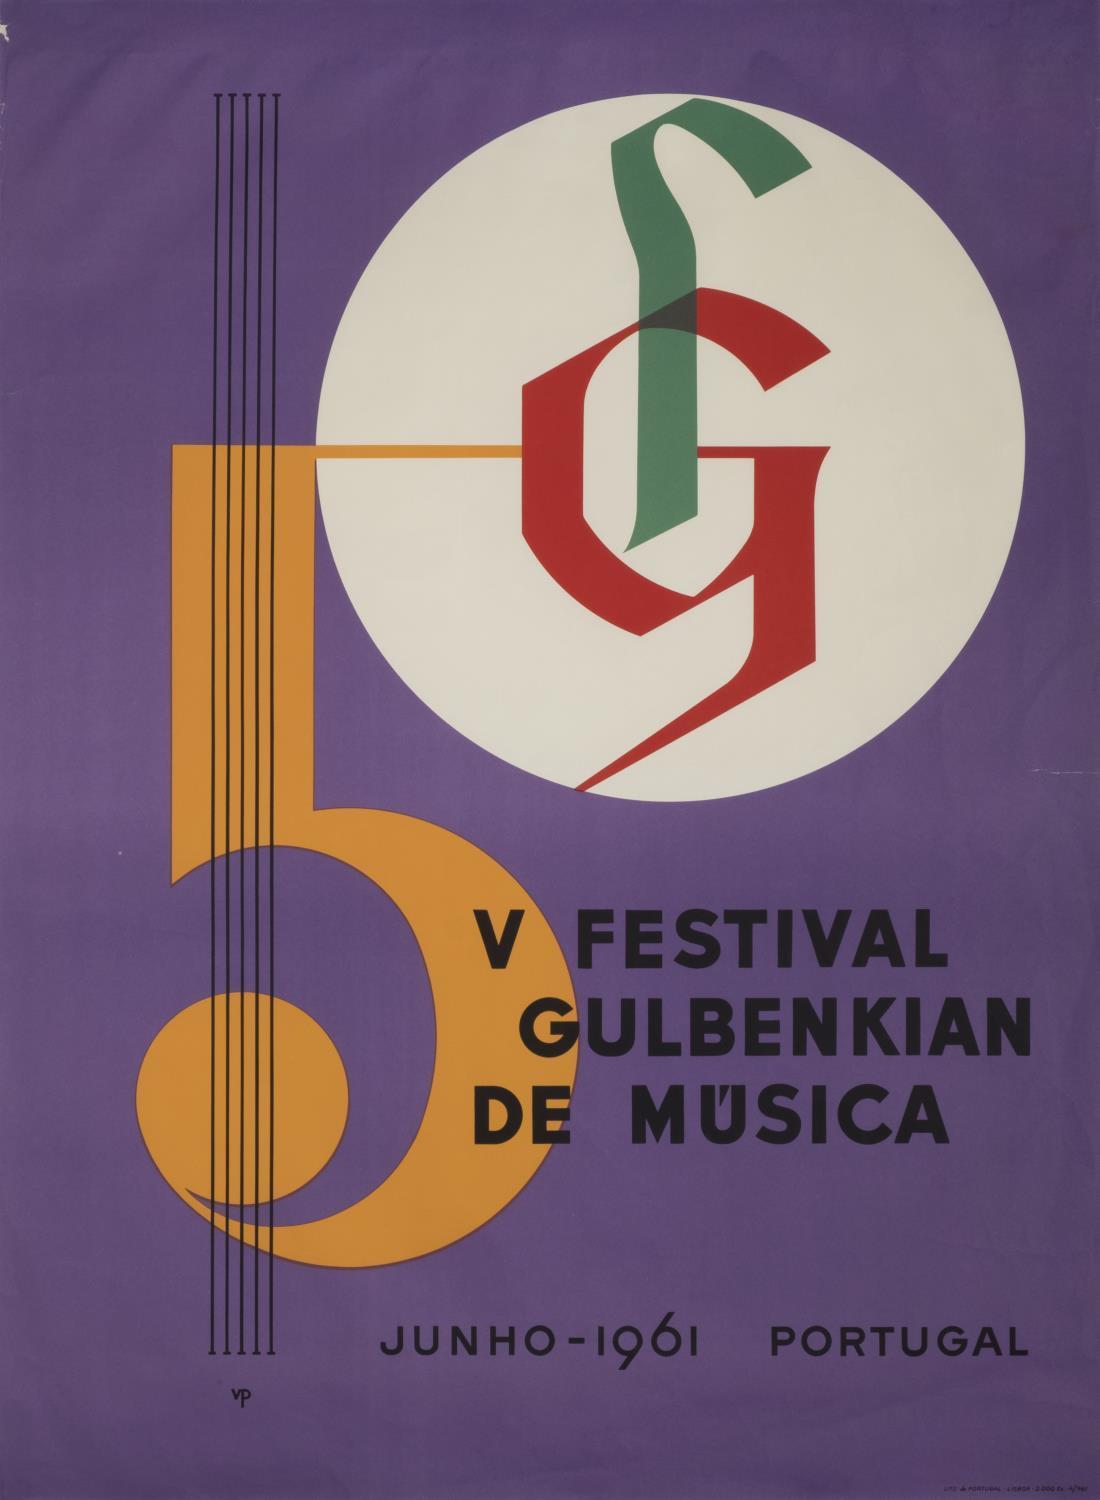 V Festival Gulbenkian de Música